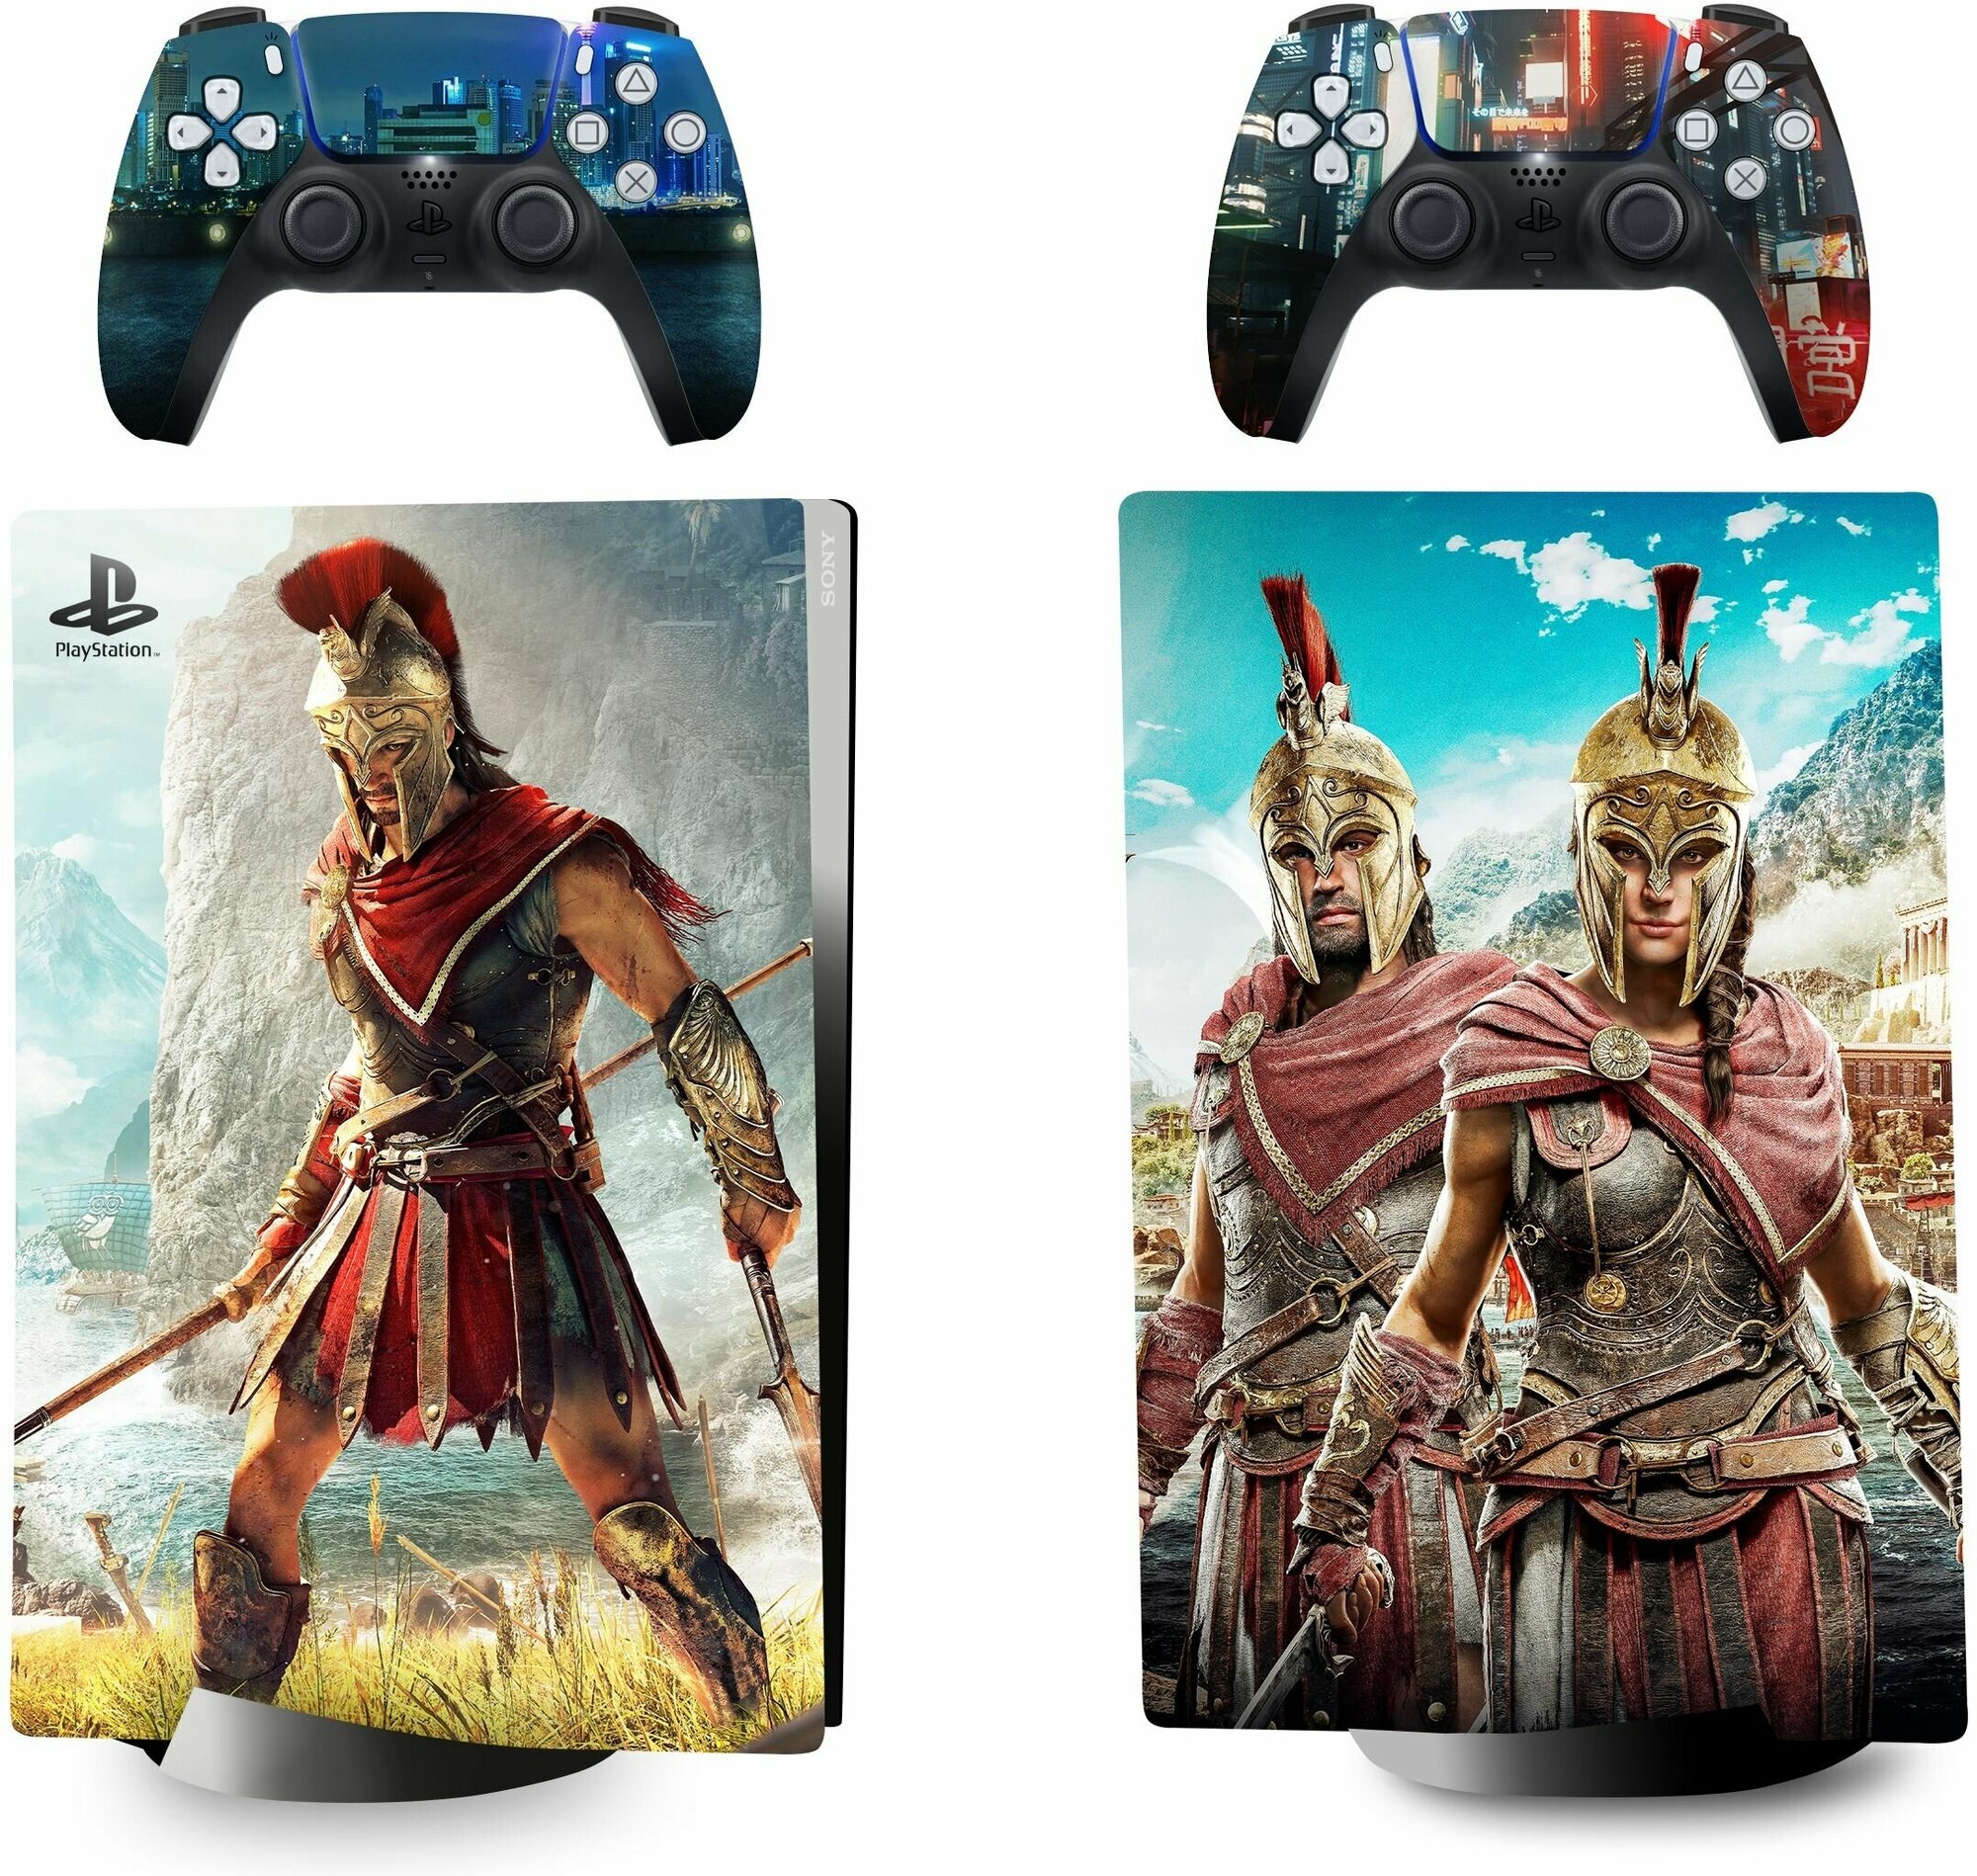 Защитная плёнка набор наклеек Assassin's Creed Odyssey на игровую консоль Sony PlayStation 5 Digital Edition